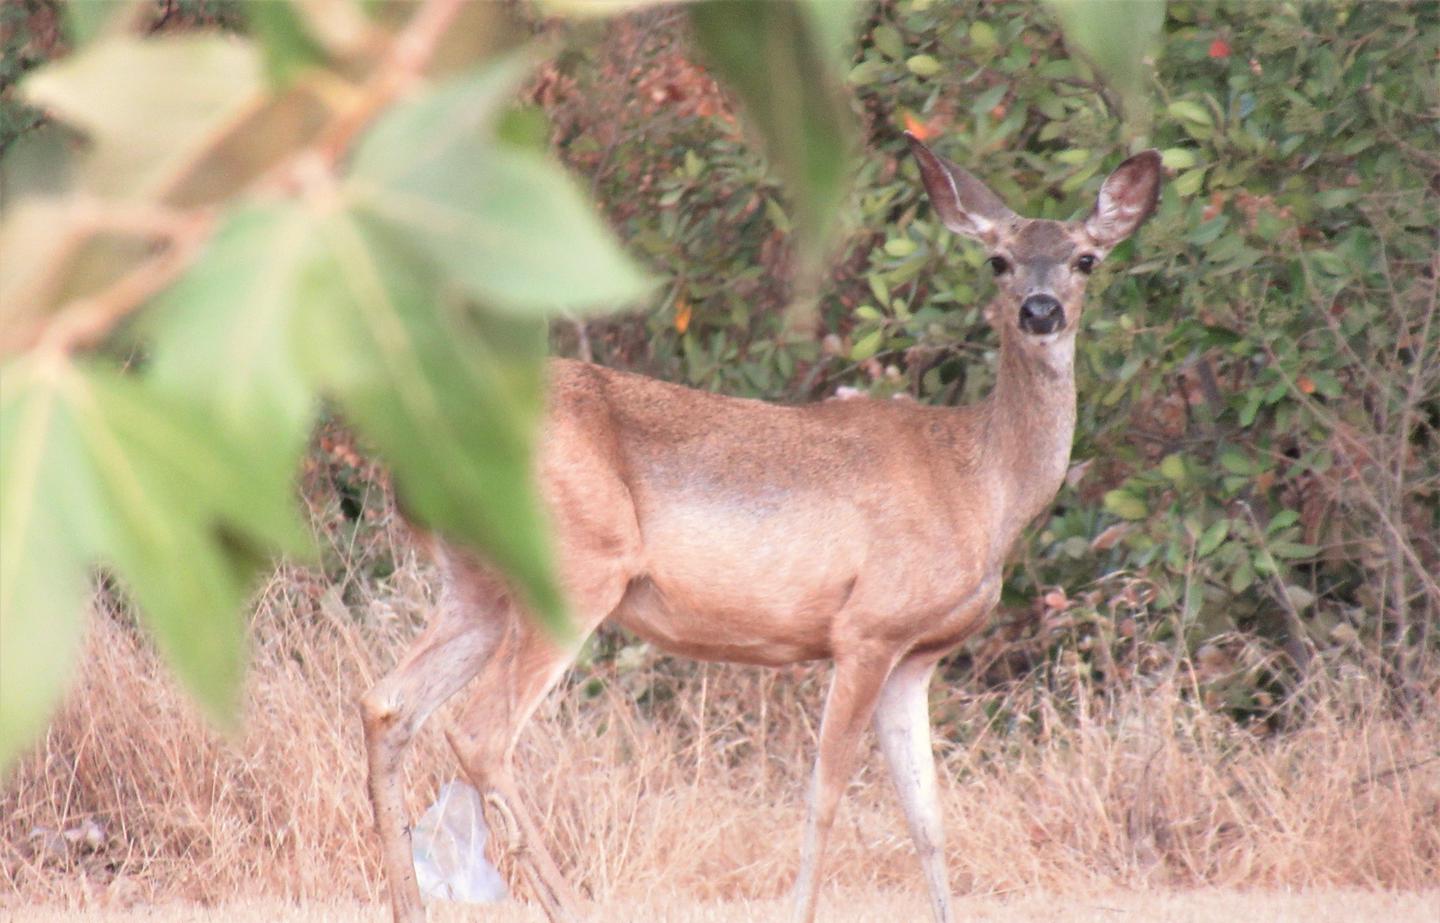 Lots of wildlife!See native wildlife species like deer at Valley Oak Recreation Area. 